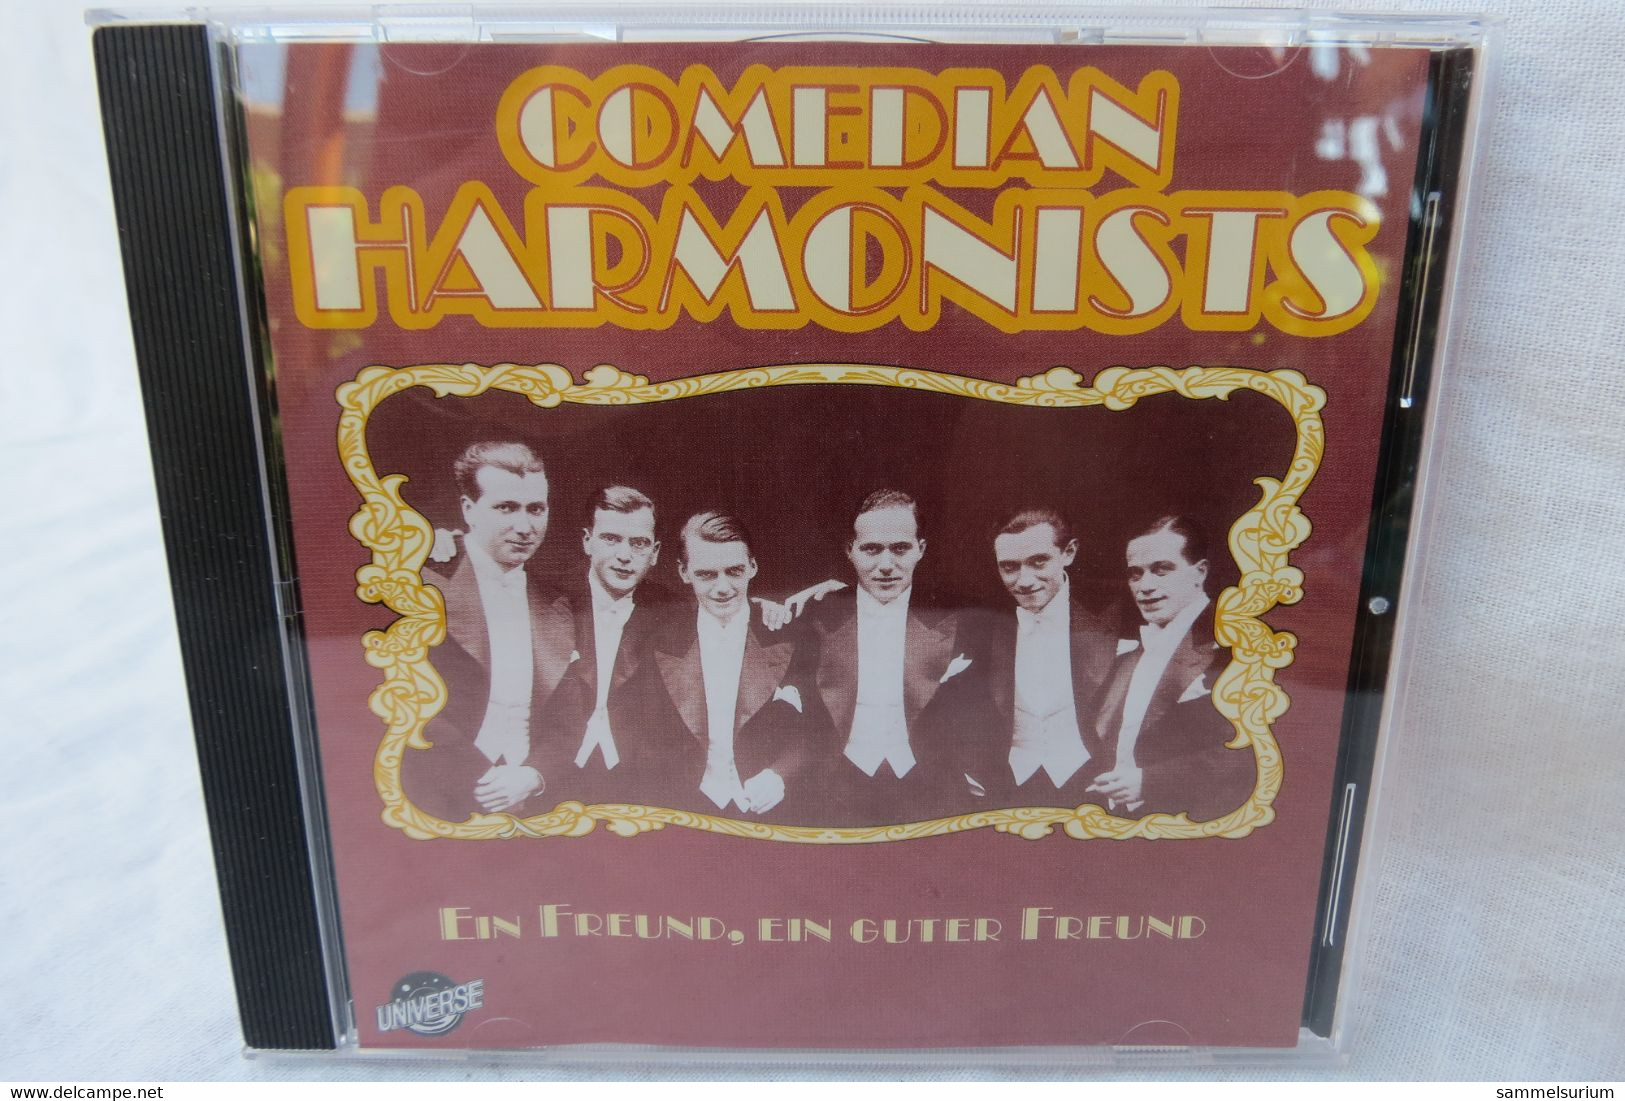 CD "Comedia Harmonists" Ein Freund, Ein Guter Freund - Other - German Music